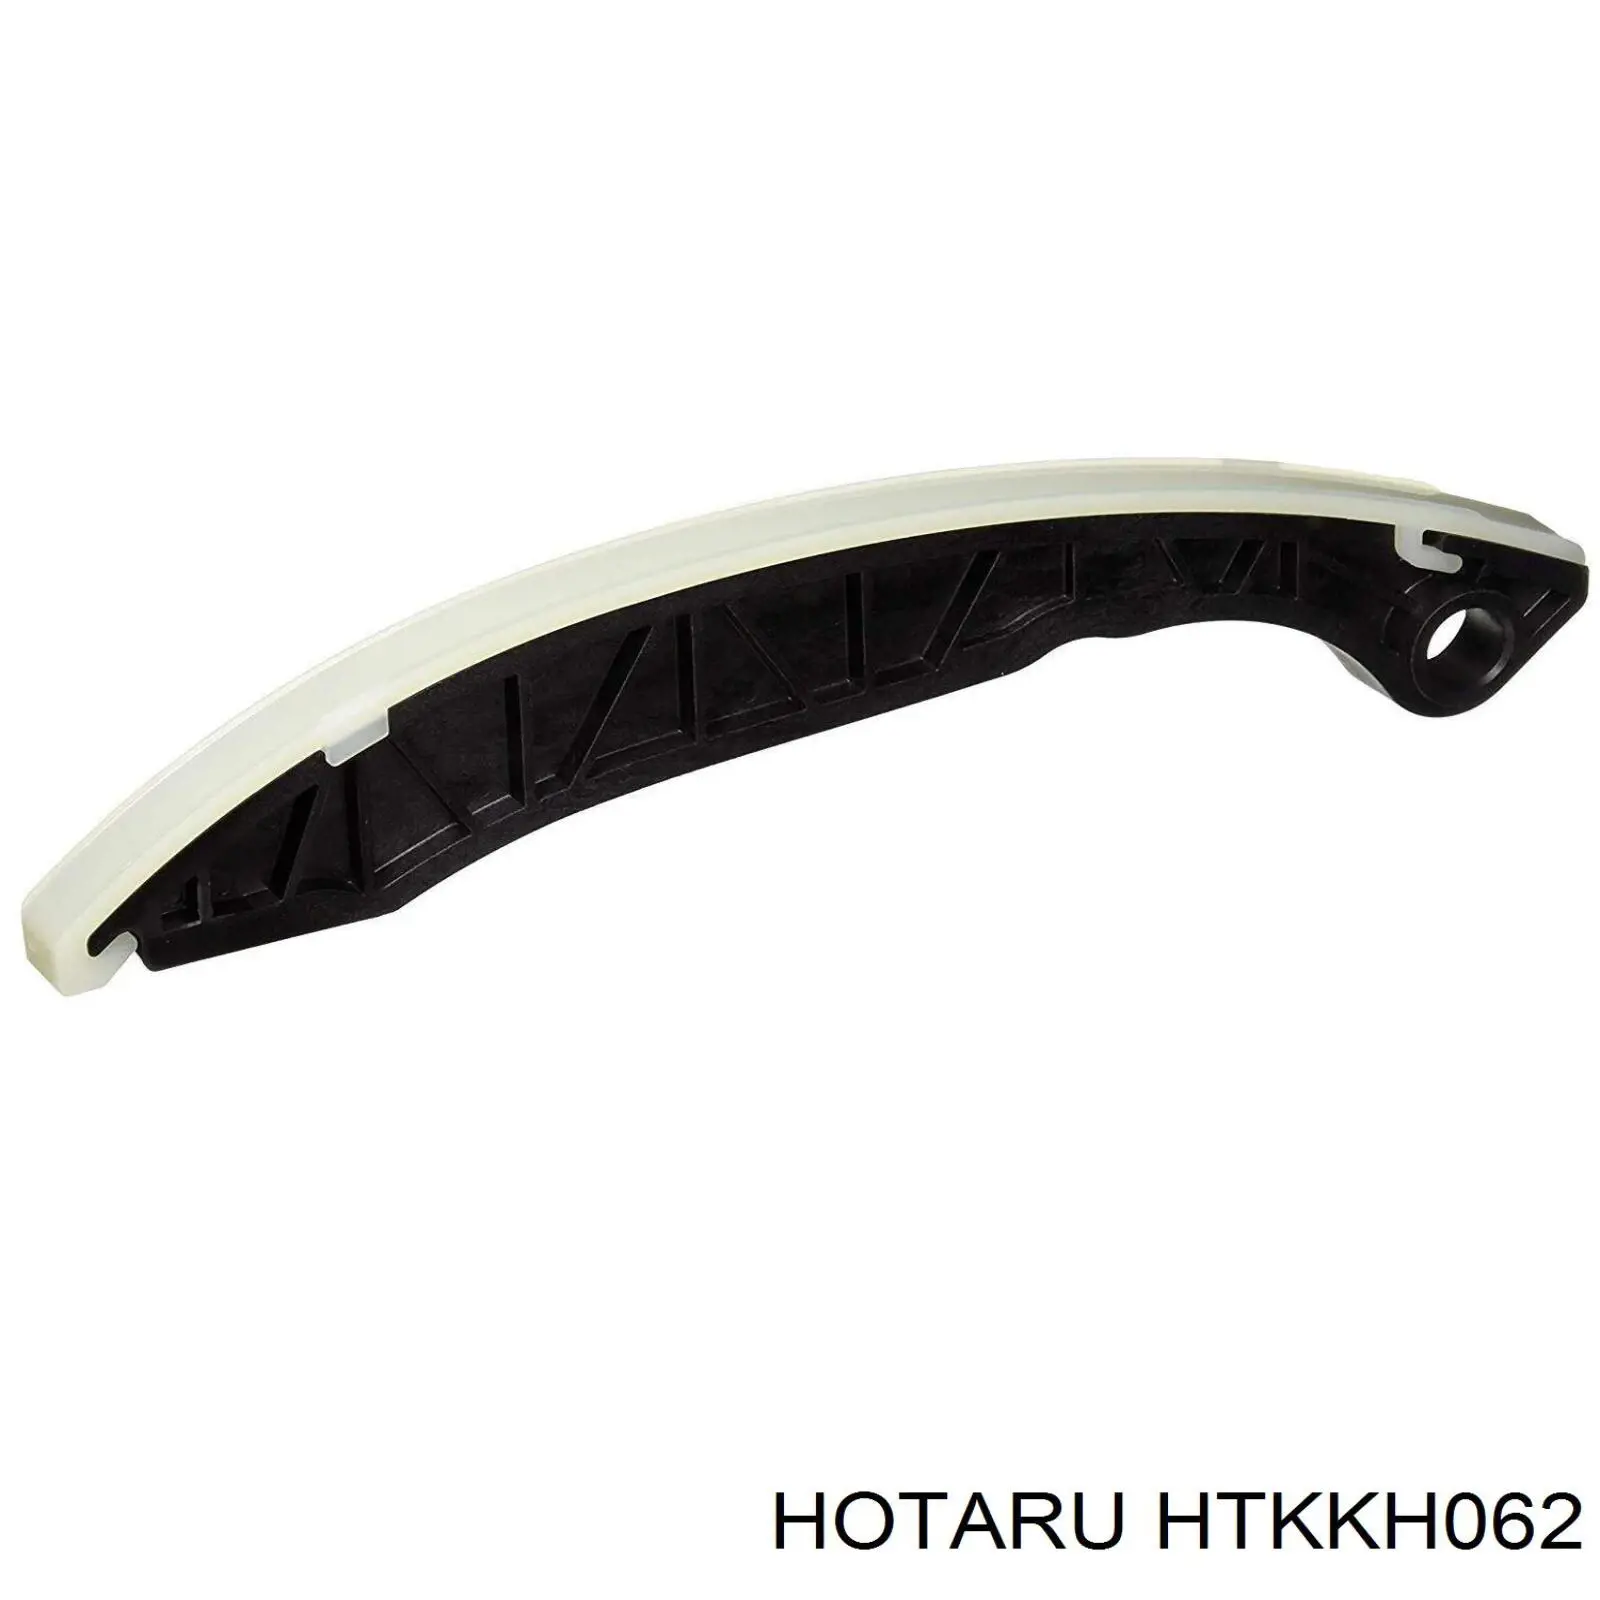 HTKKH062 Hotaru cadeia do mecanismo de distribuição de gás, kit